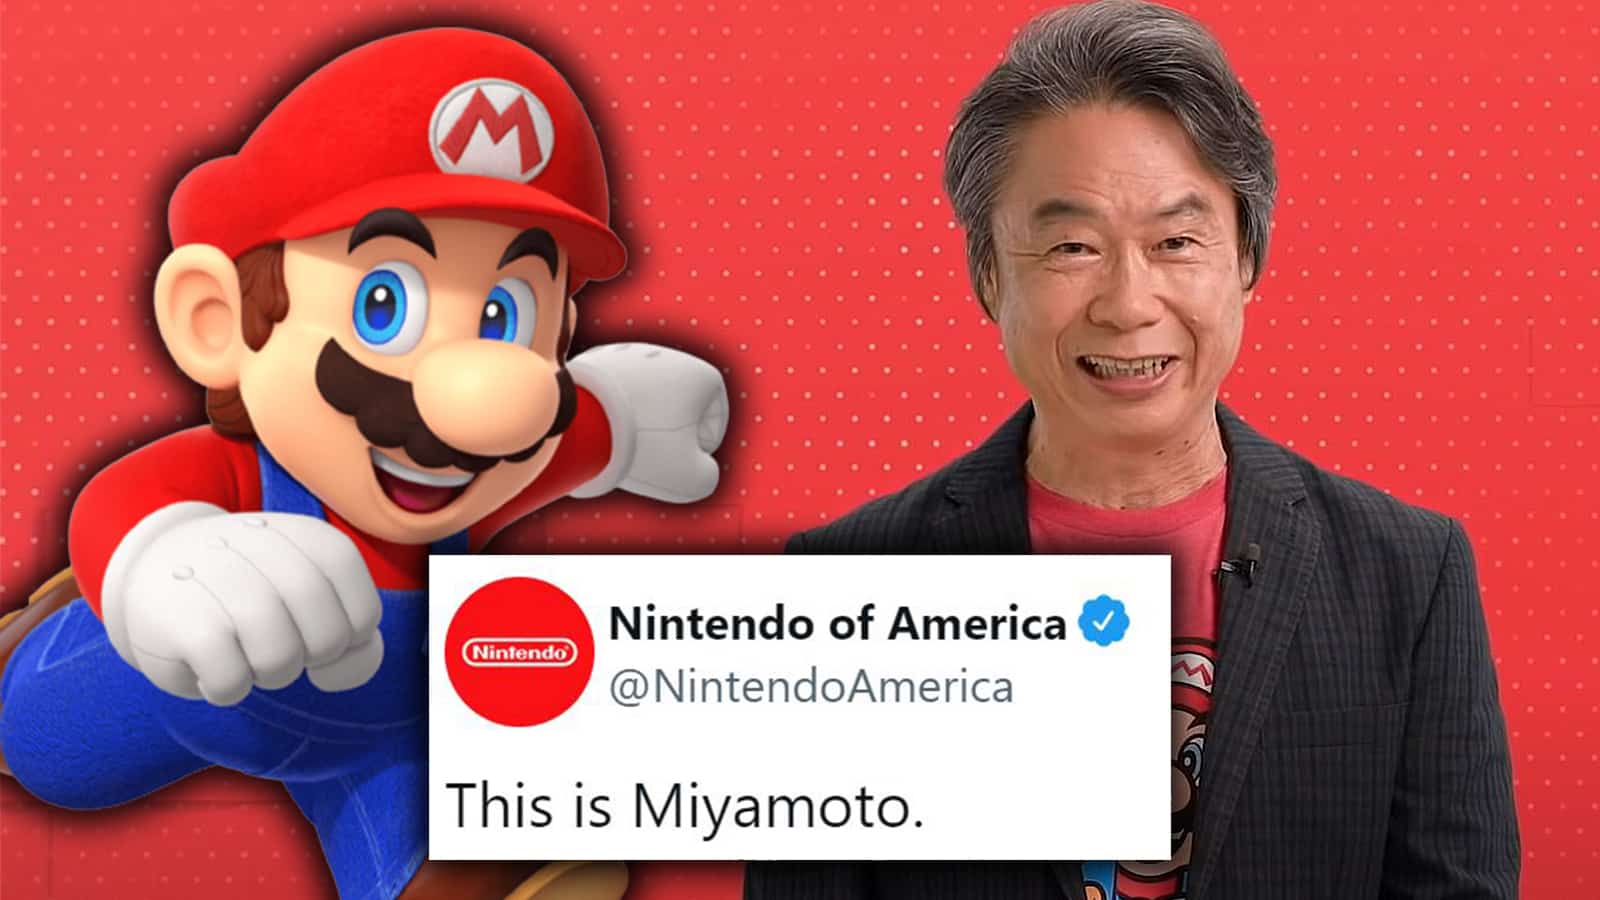 Miyamoto tweet spawns countless memes